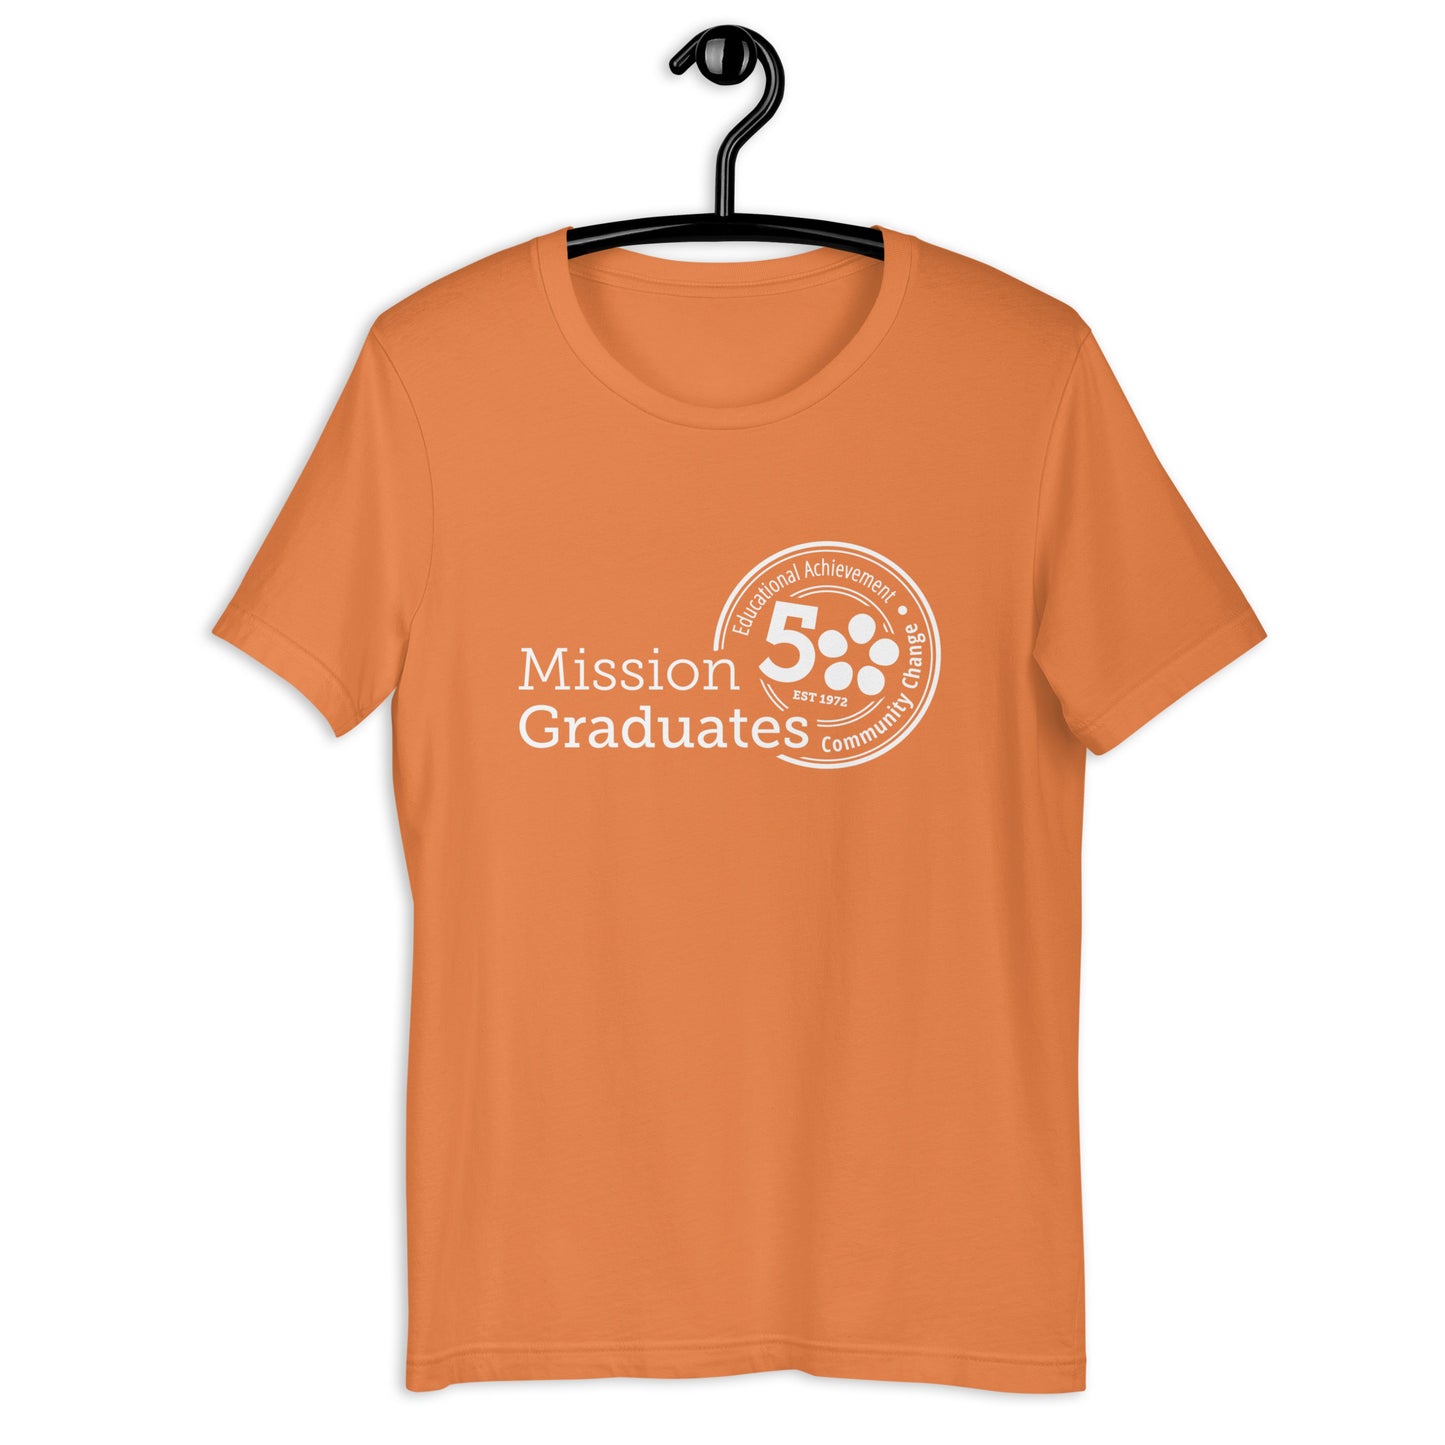 Mission Graduates - Educational Achievement, Community Change Adult Unisex T-shirt